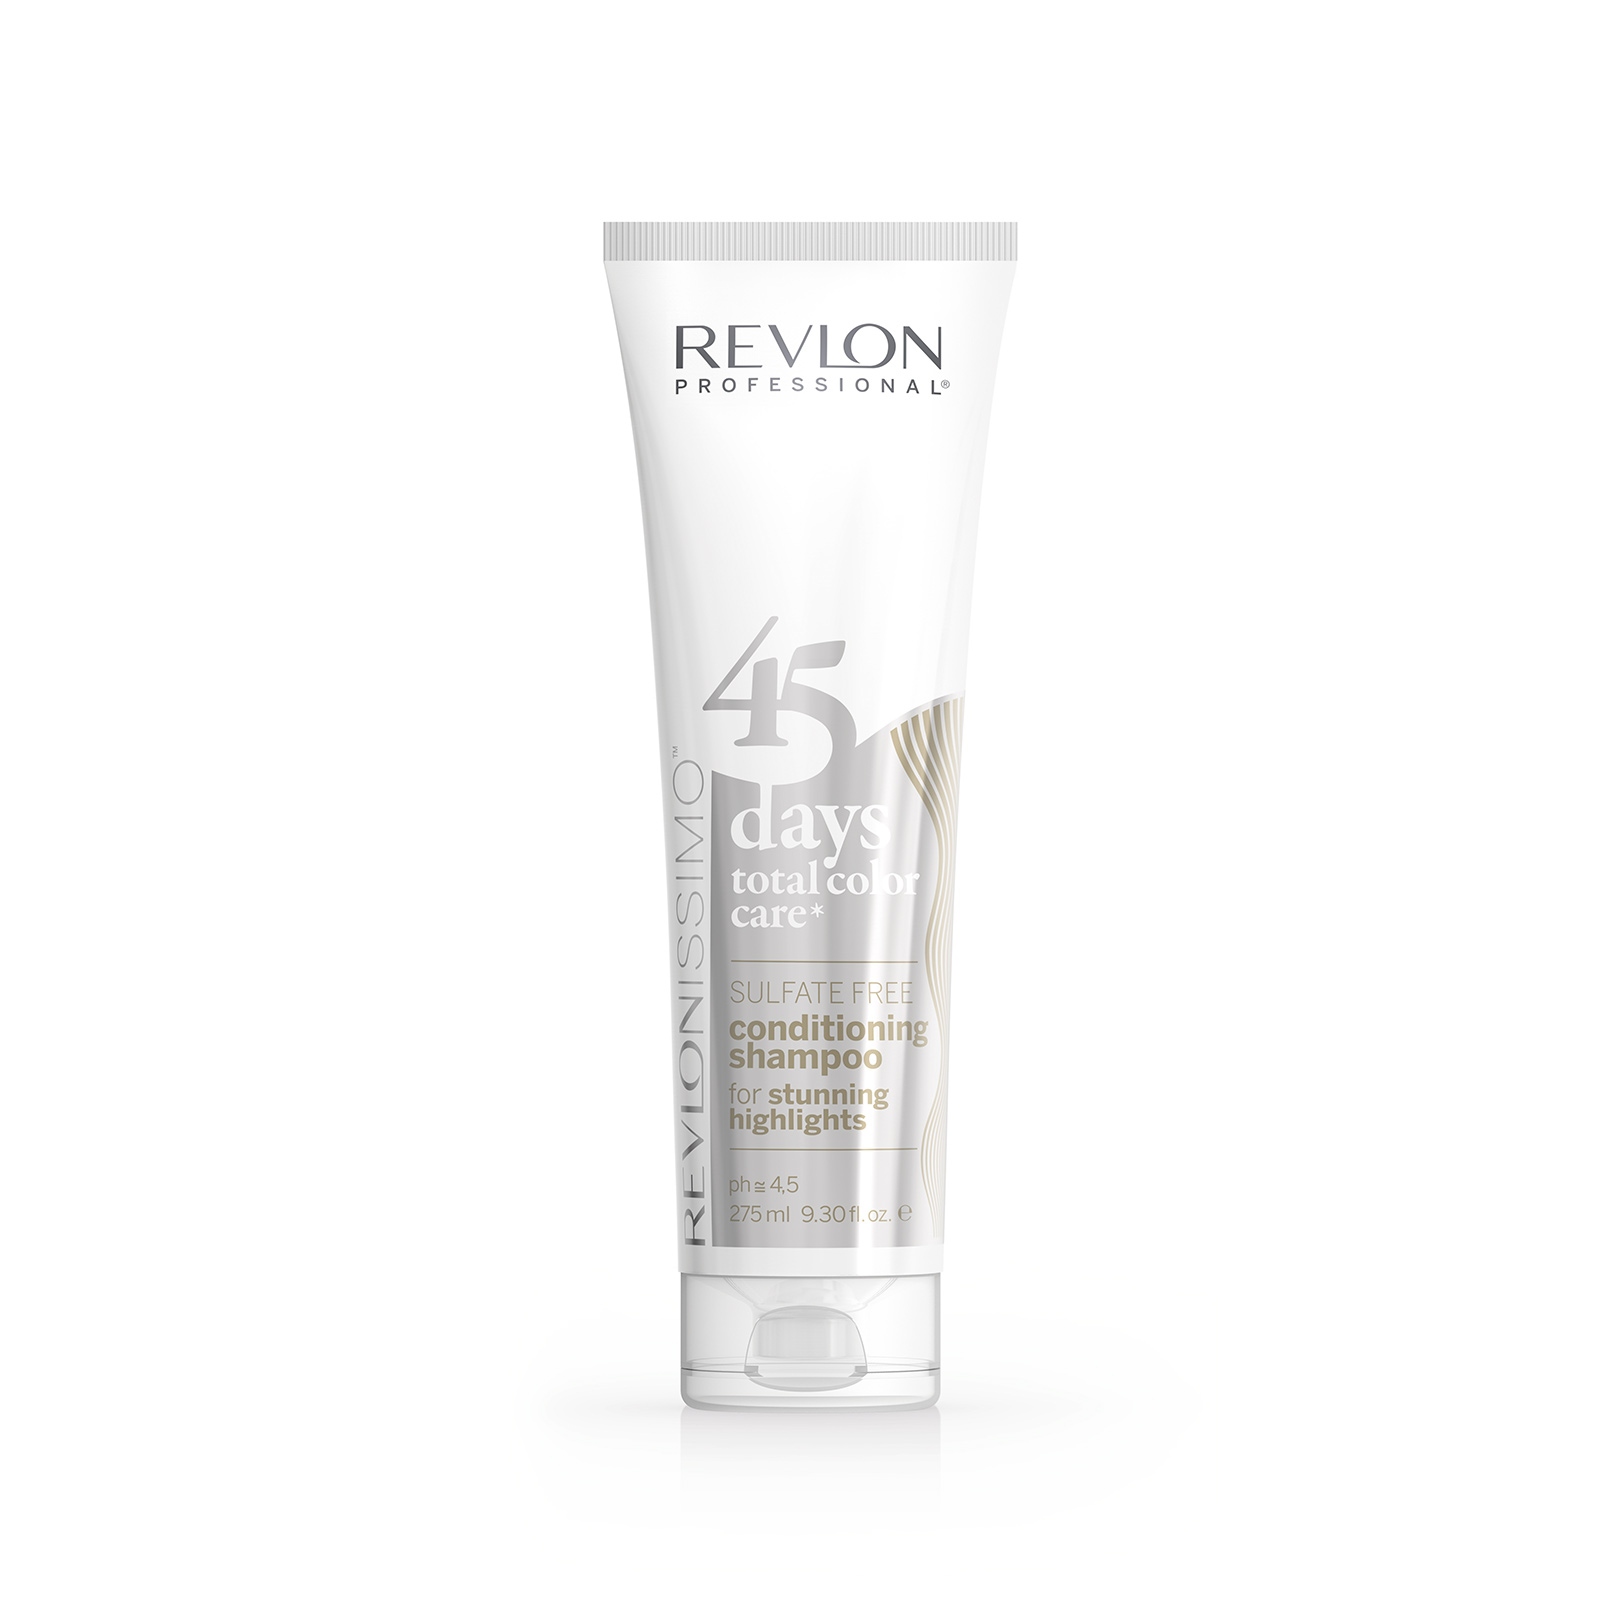 Шампуни для волос:  REVLON Professional -  Шампунь-кондиционер для светлых холодных оттенков, мелированных или седых волос 45 Days Shampoo STUNNING HIGHLIGHTS (275 мл)